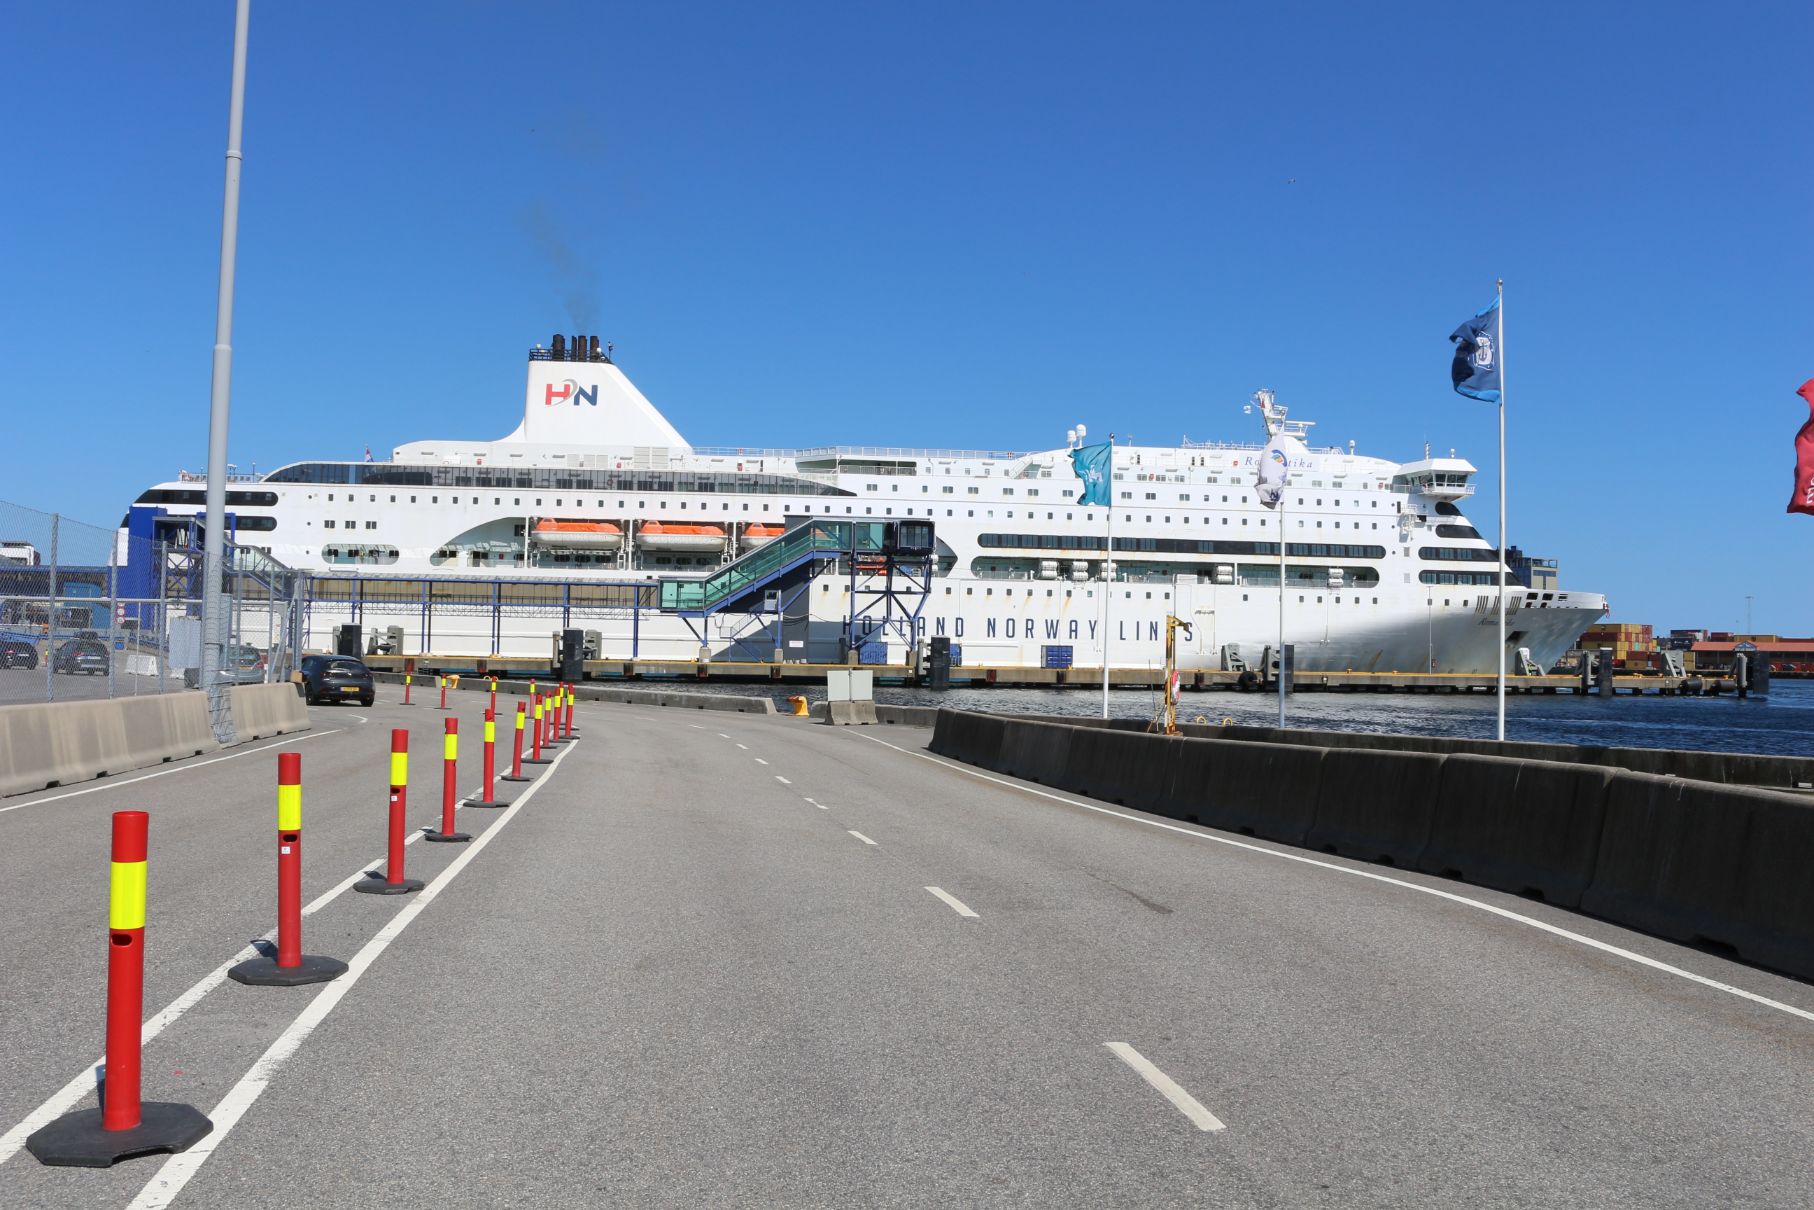 de M/S romantika in de haven van Kristiansand